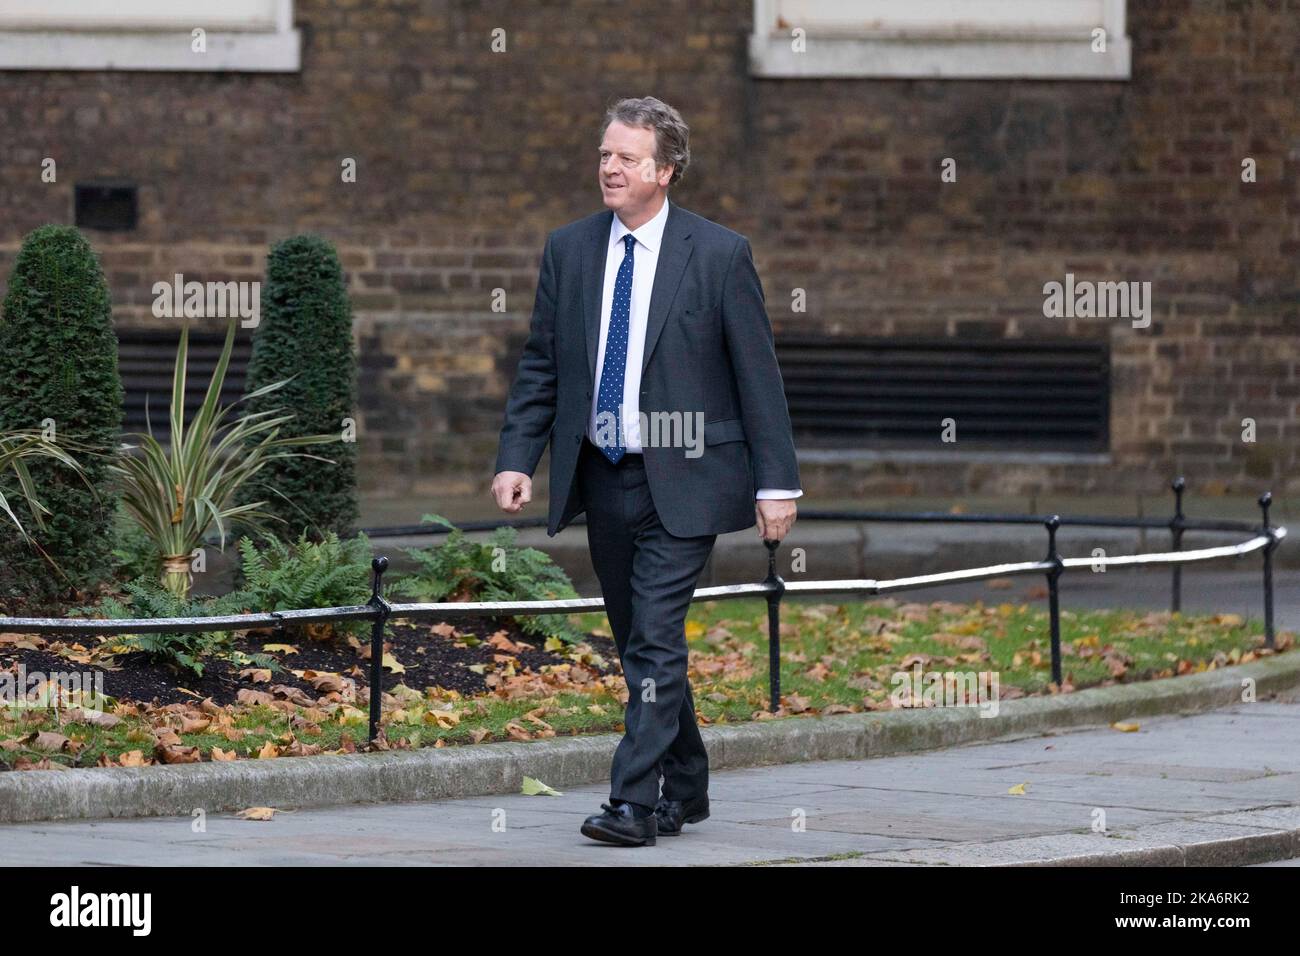 Mel Stride arrive à Downing Street cet après-midi alors que le Premier ministre Rishi Sunak nomme son nouveau cabinet. Photo prise le 25th Oct 20 Banque D'Images